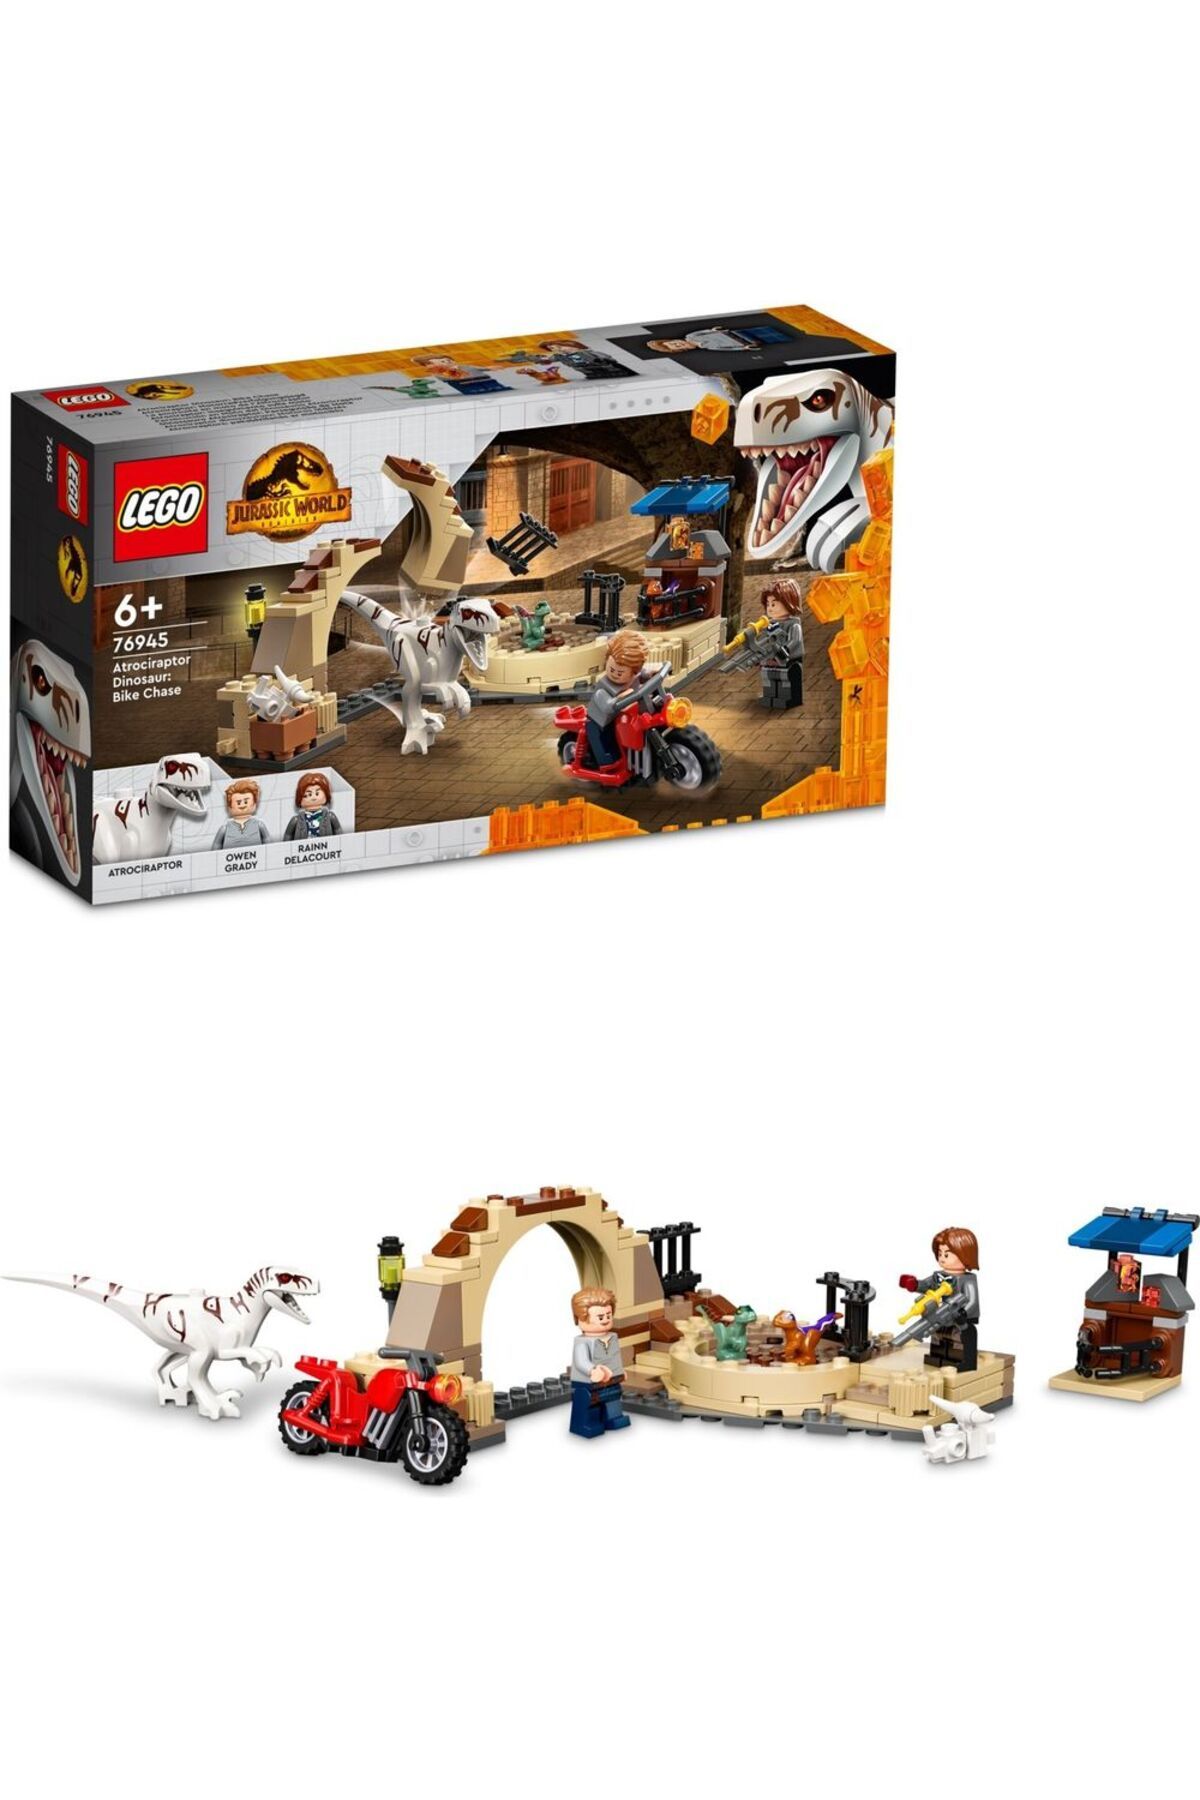 LEGO ® Jurassic World Atrociraptor Dinozor: Motosiklet Takibi 76945 - Oyuncak Yapım Seti (169 Parça)